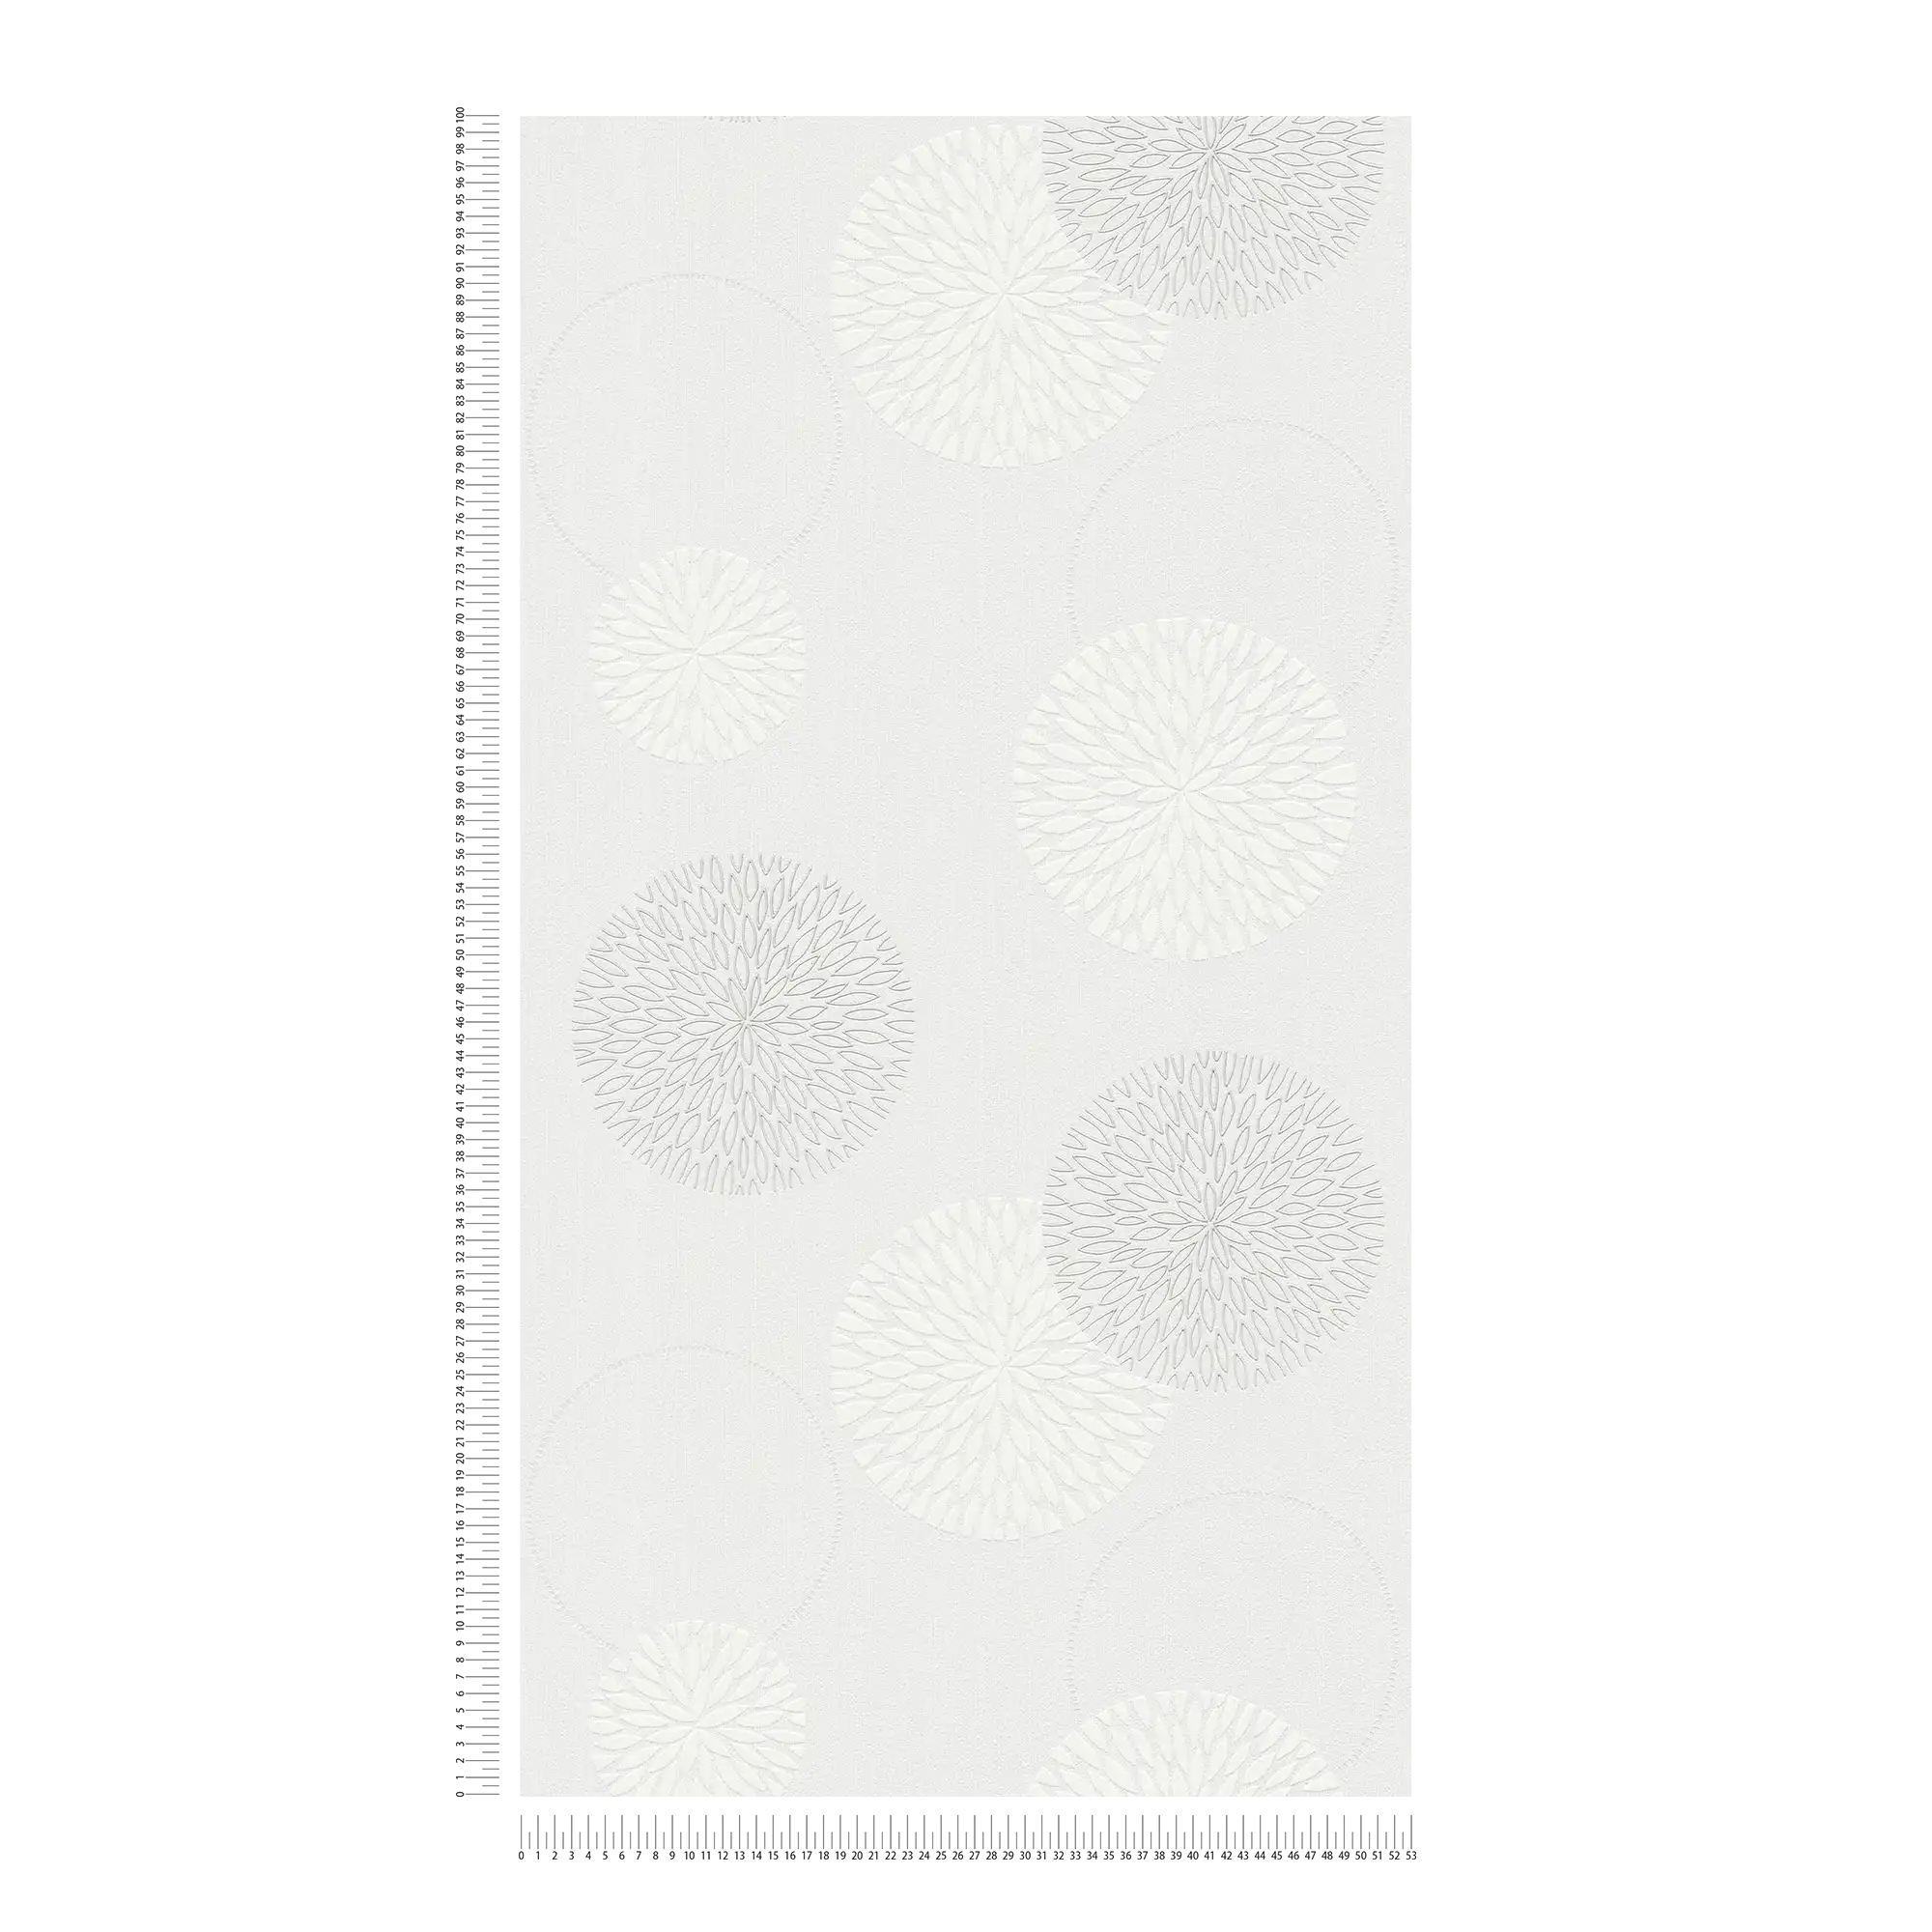             Carta da parati in tessuto non tessuto a fiori con disegno astratto - crema, bianco
        